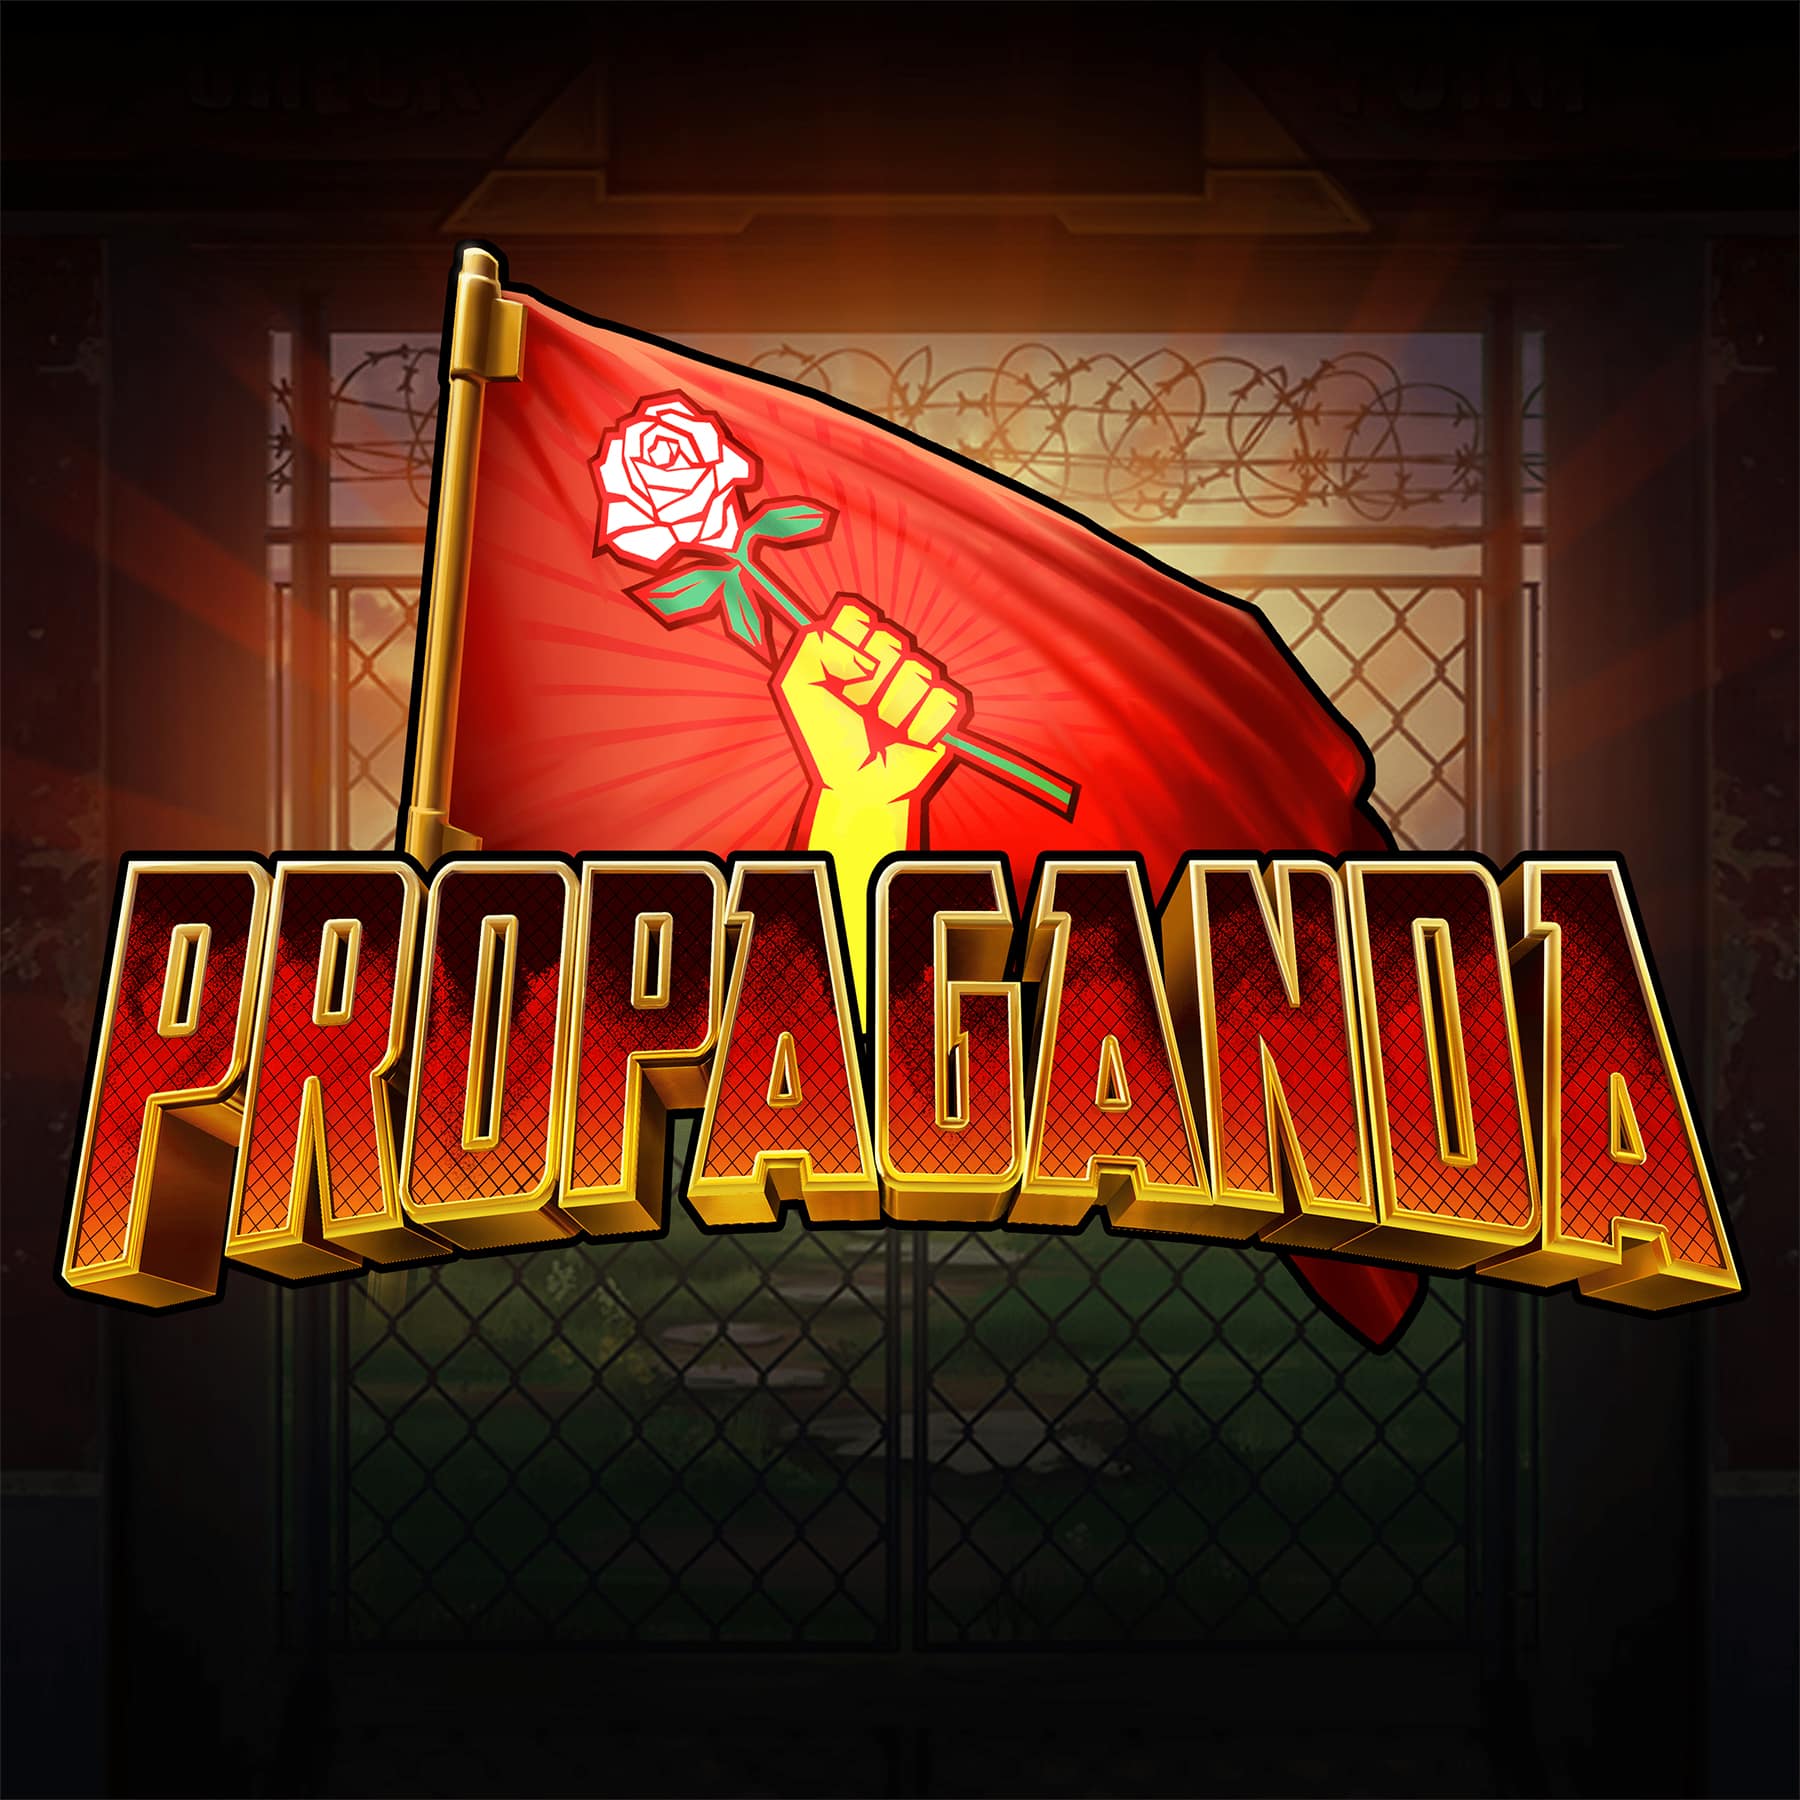 Propaganda Logo